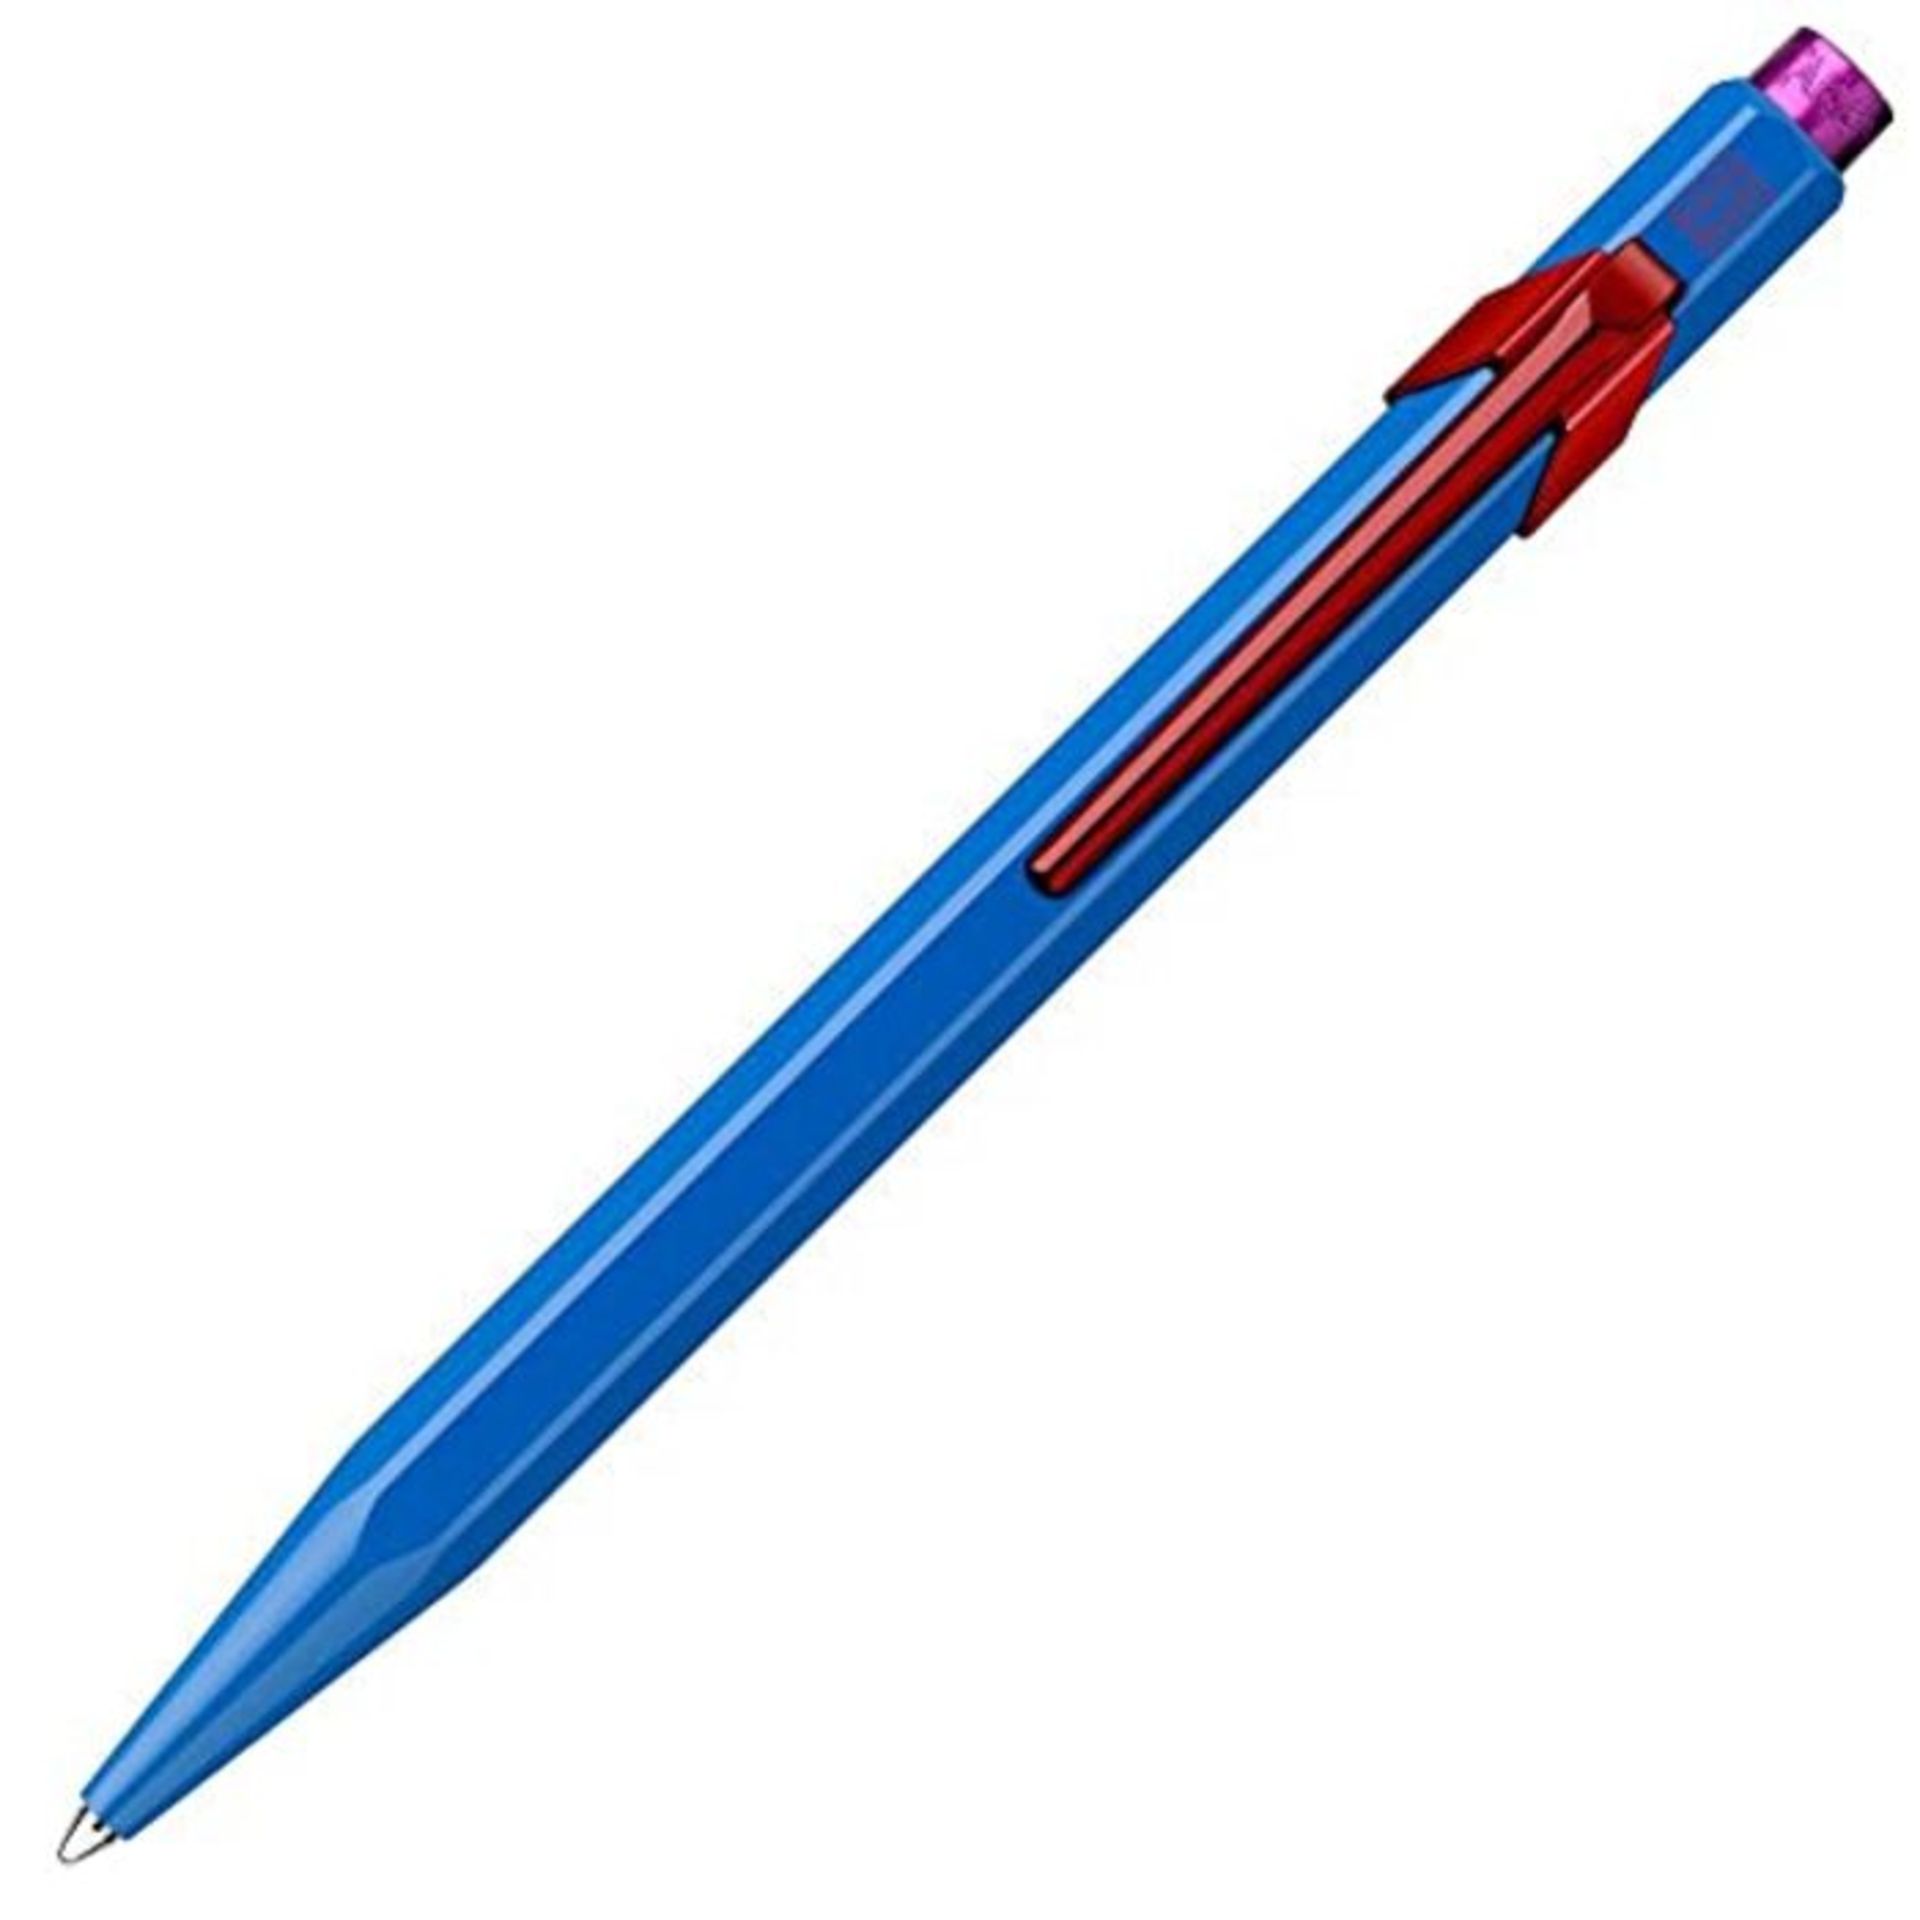 Caran d'Ache 849 Ballpoint Pen 'Claim Your Style' Edition 2 - Cobalt Blue